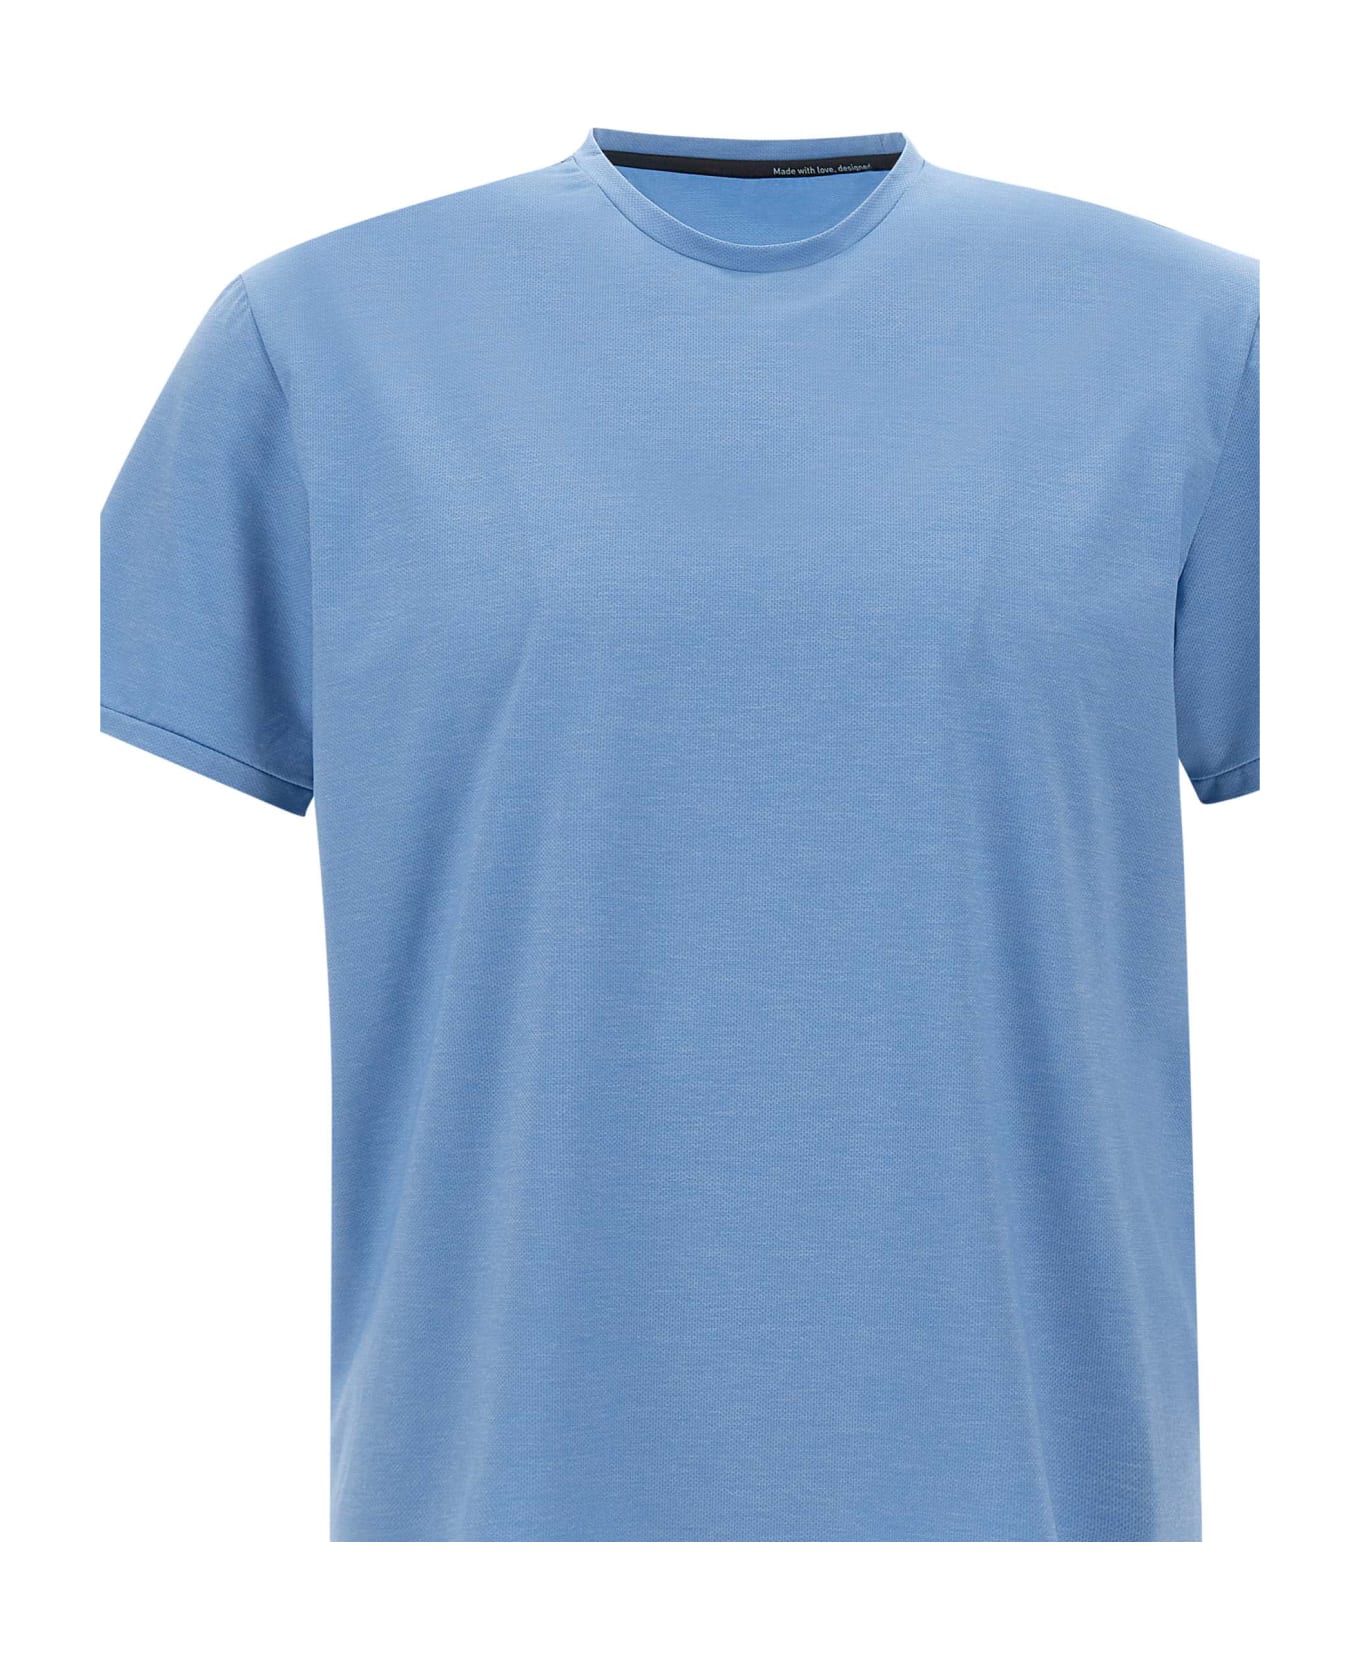 RRD - Roberto Ricci Design "summer Smart" T-shirt - LIGHT BLUE